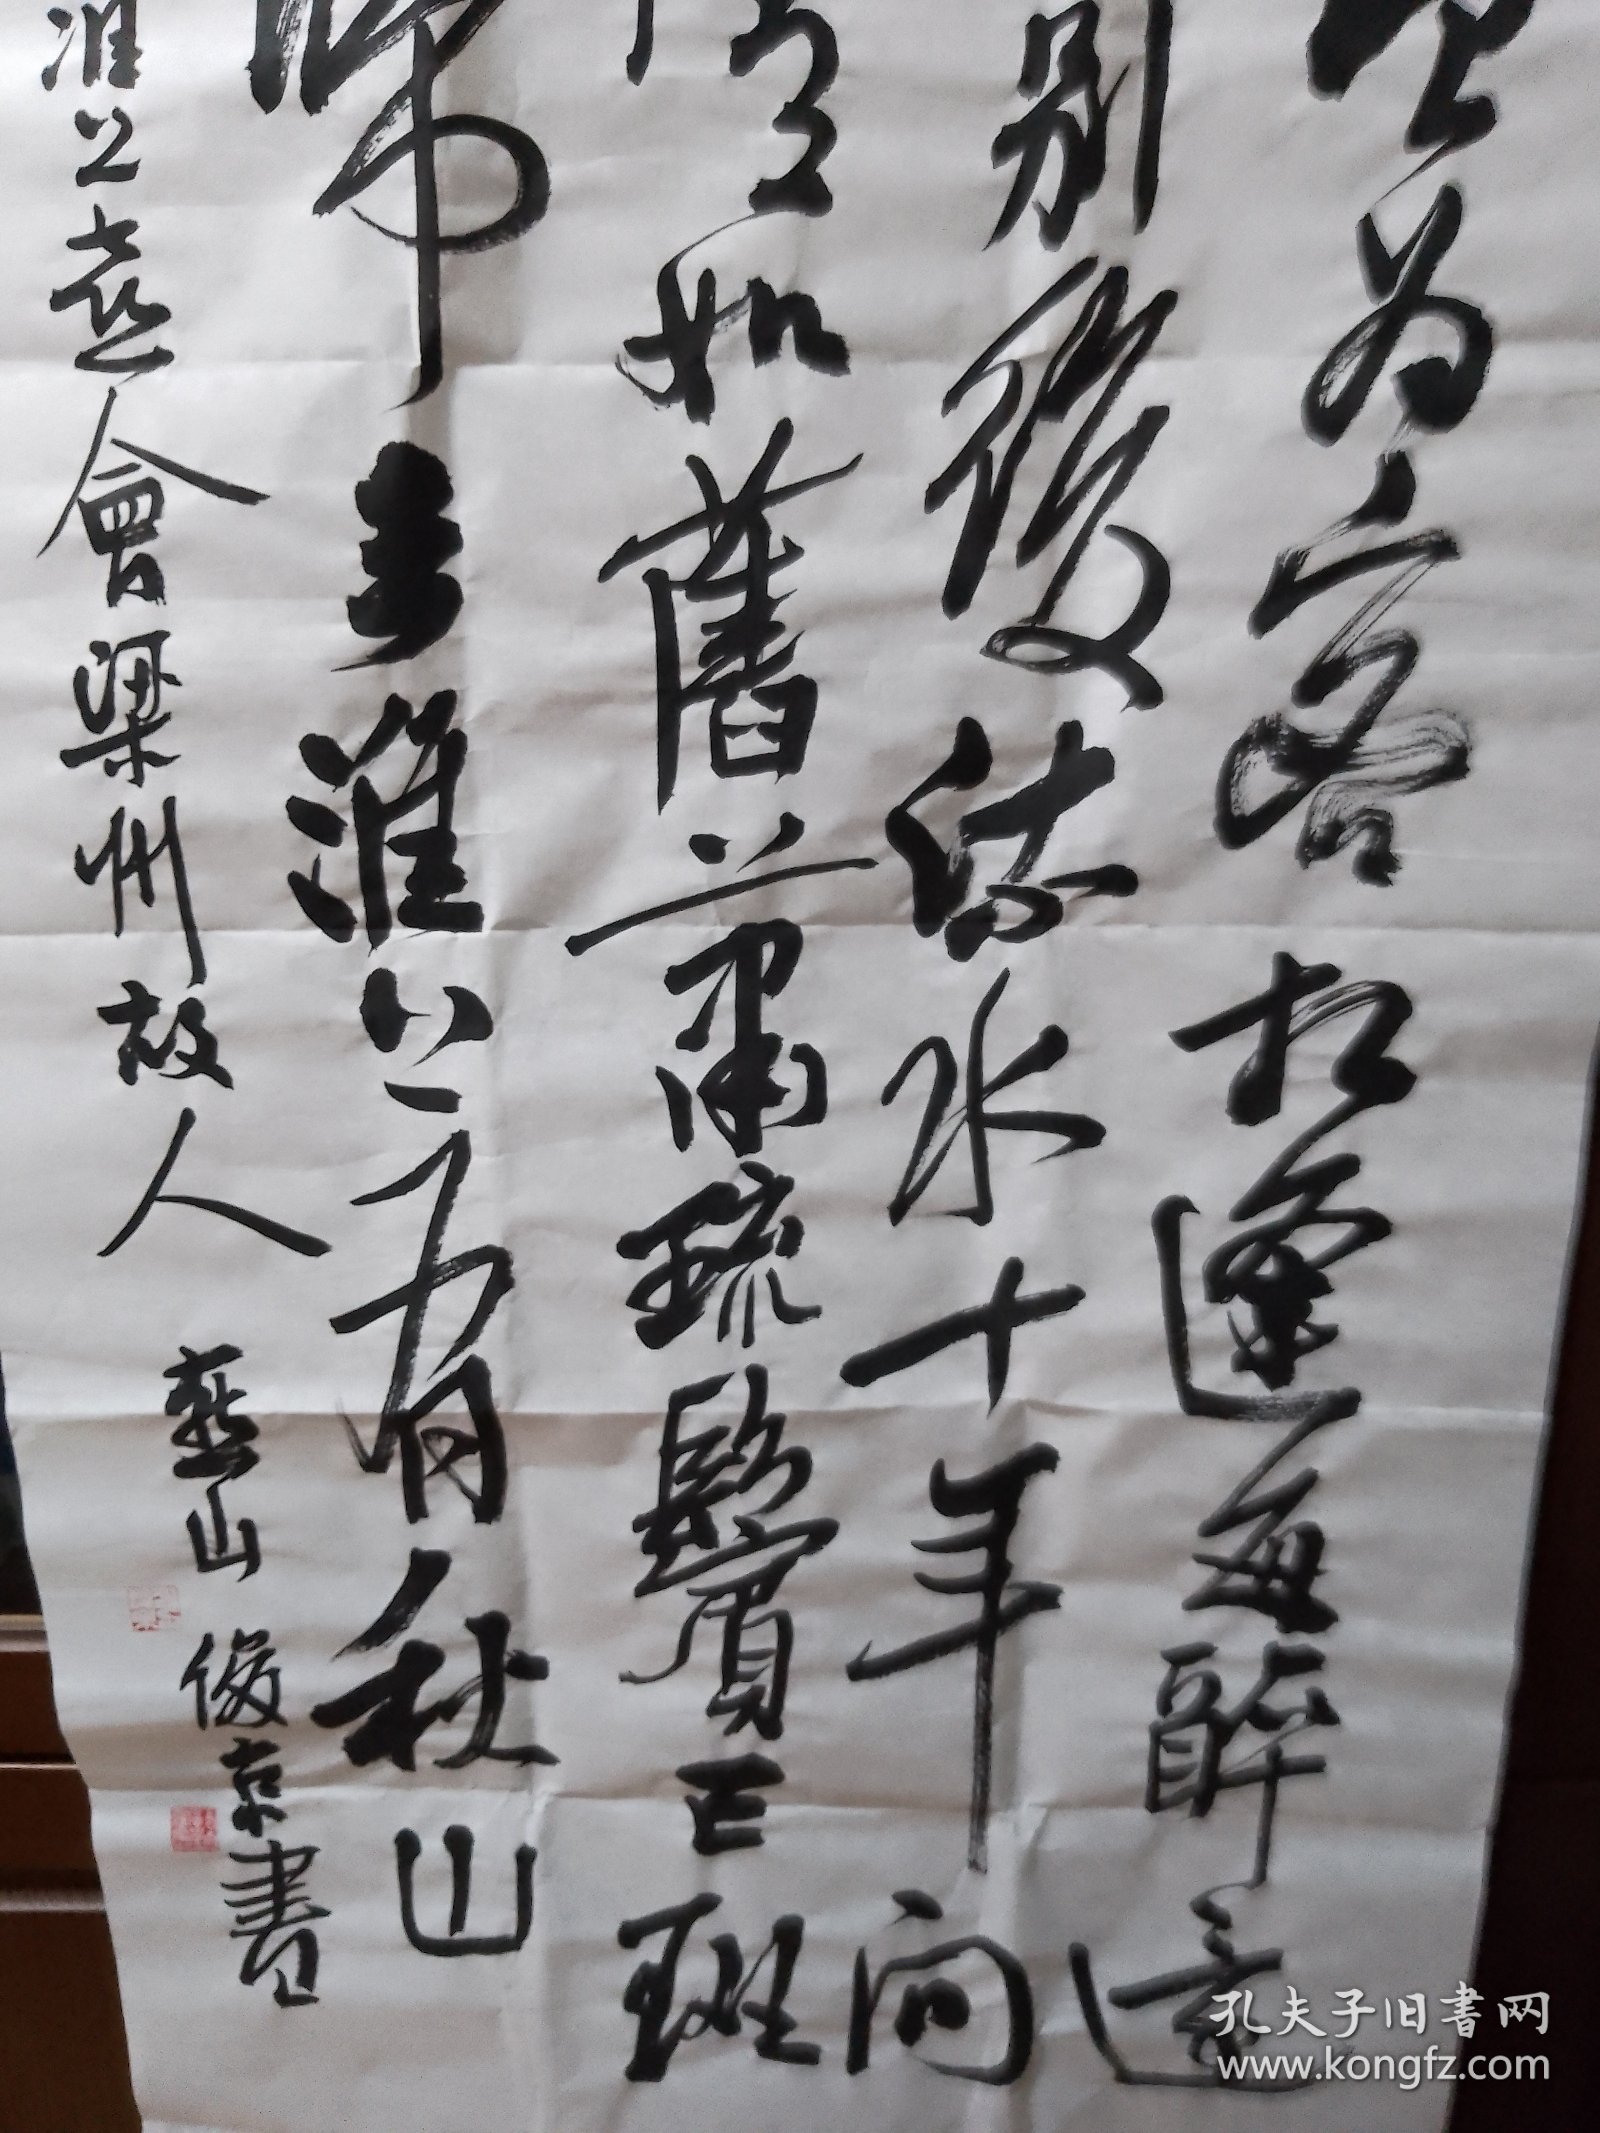 刘俊京行书中堂《唐韦应物诗一首》。